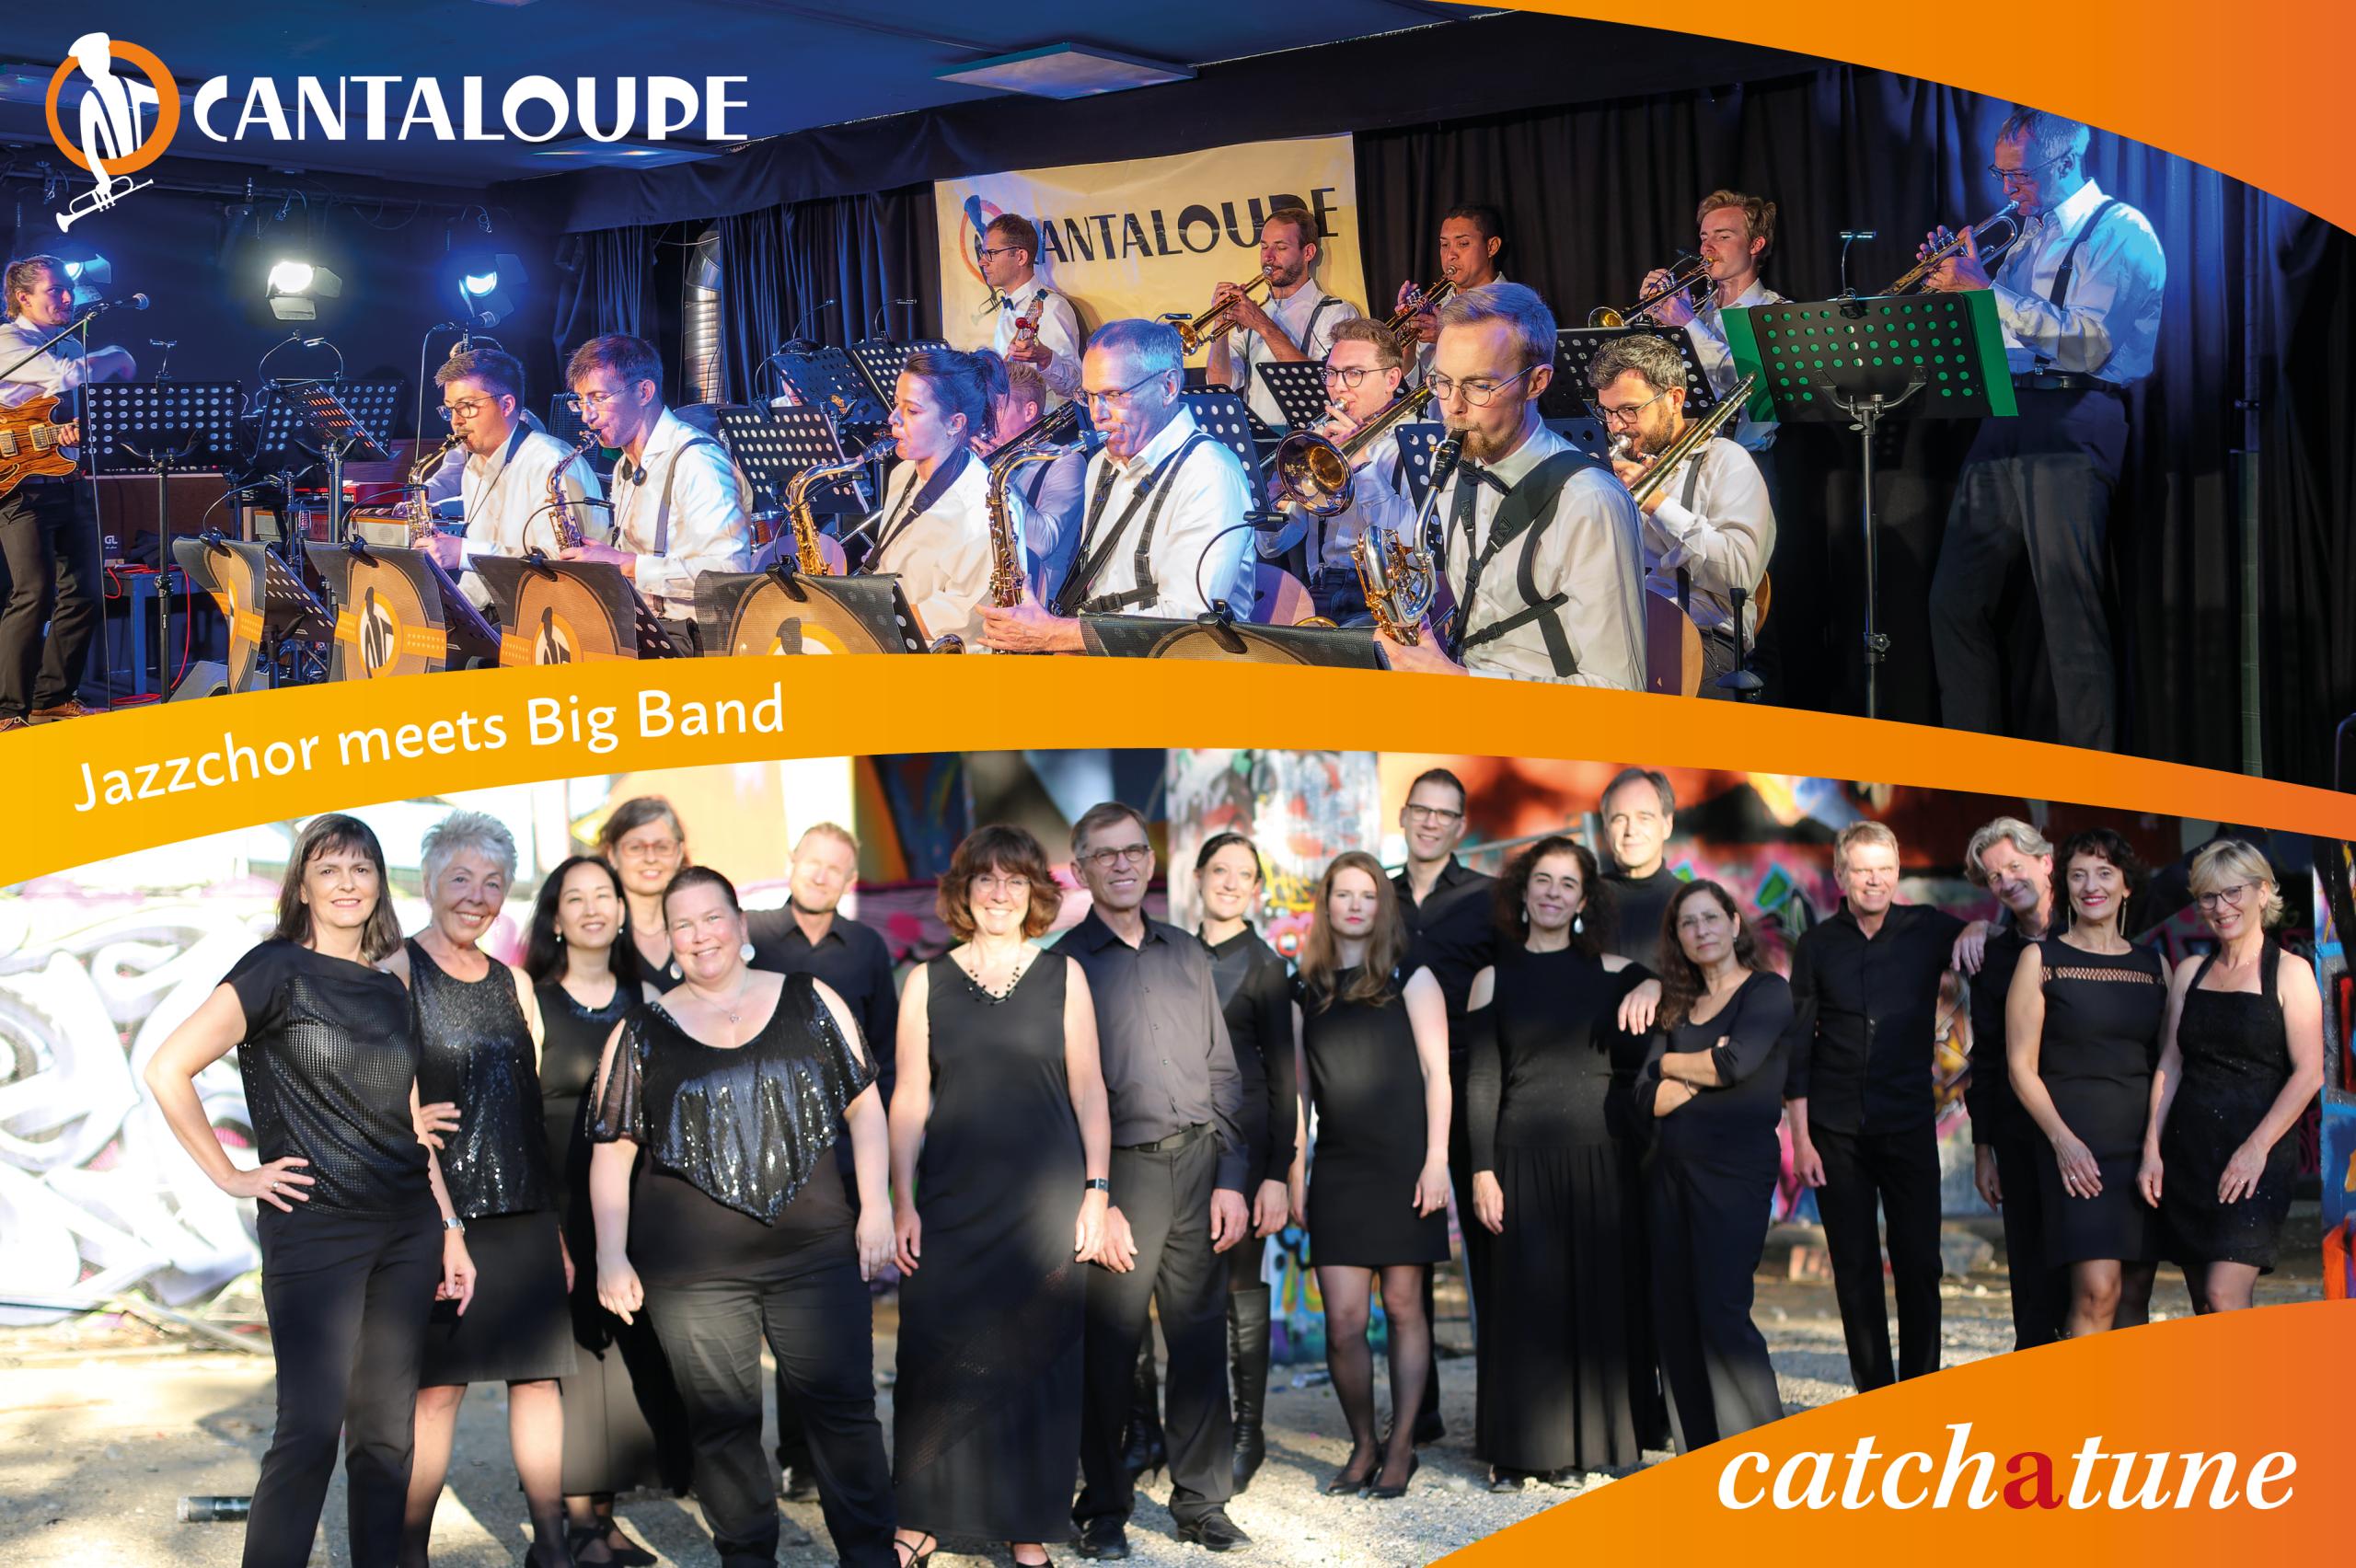 Zusammenstellung von zwei Fotos. Einmal ein Bild der Bigband Cantaloupe während eines Auftritts und einmal ein Gruppenfoto des Jazzchores Catchatune